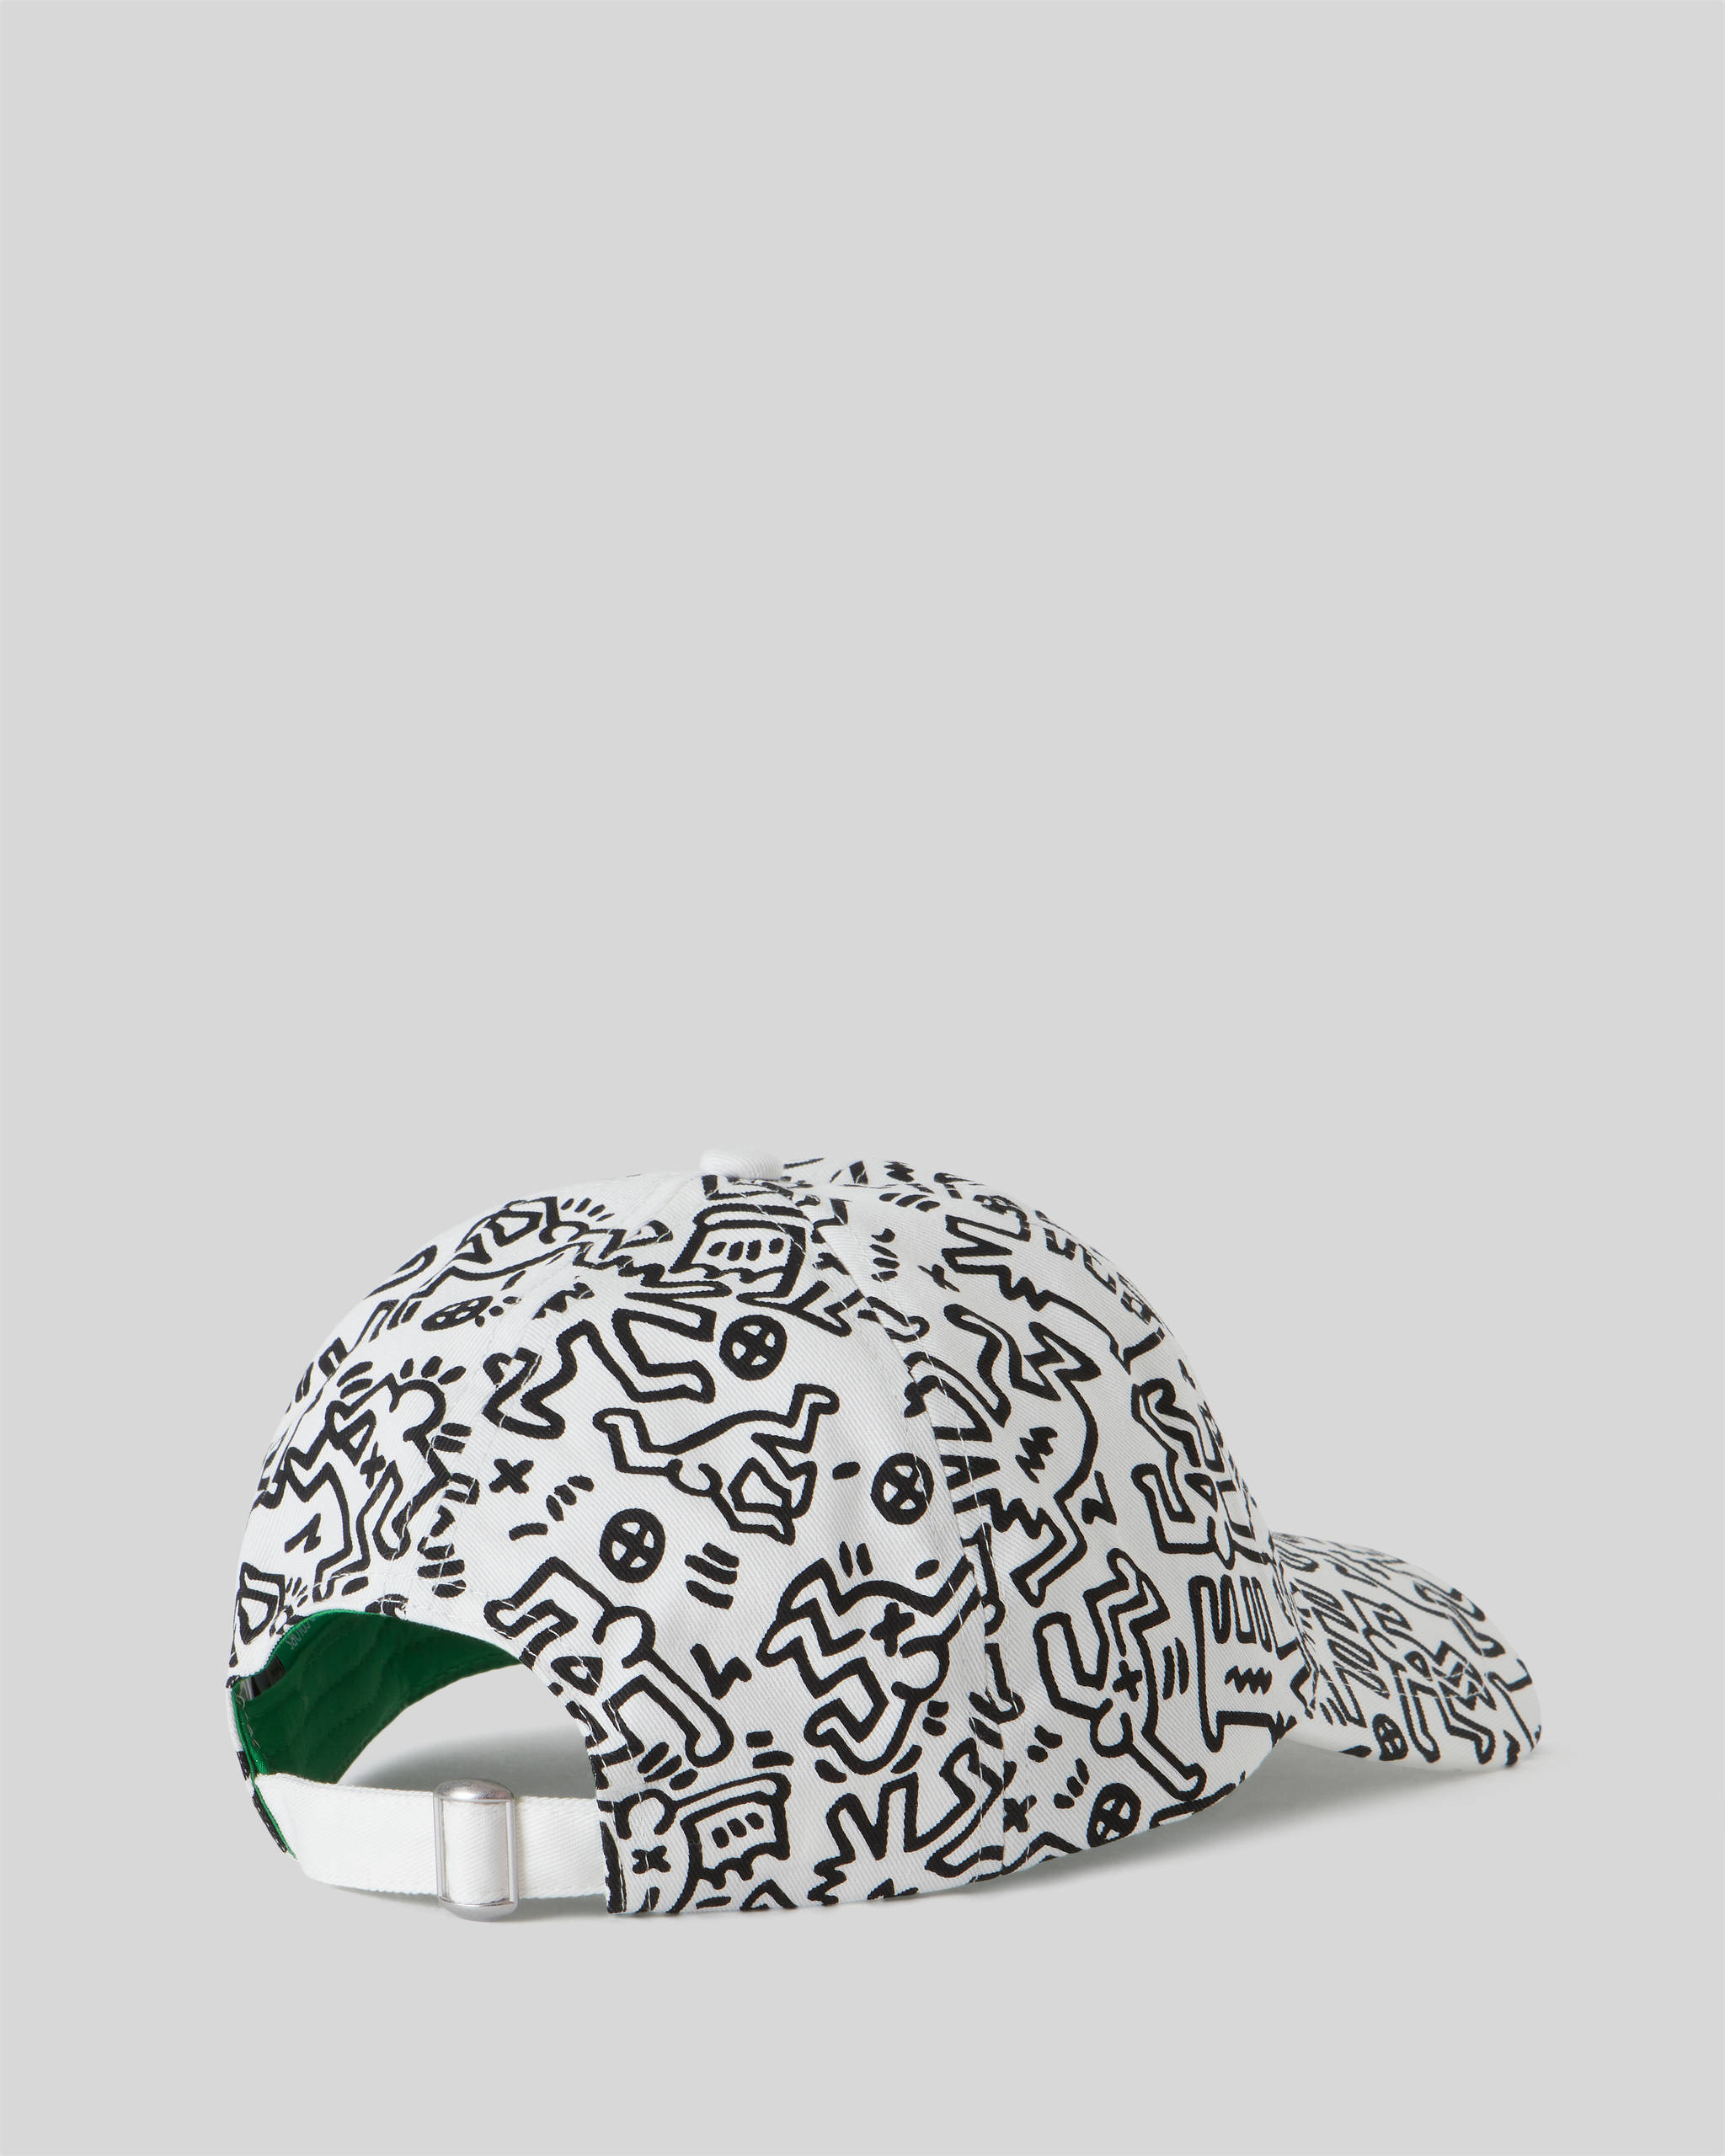 Benetton Keith Haring Şapka. 2